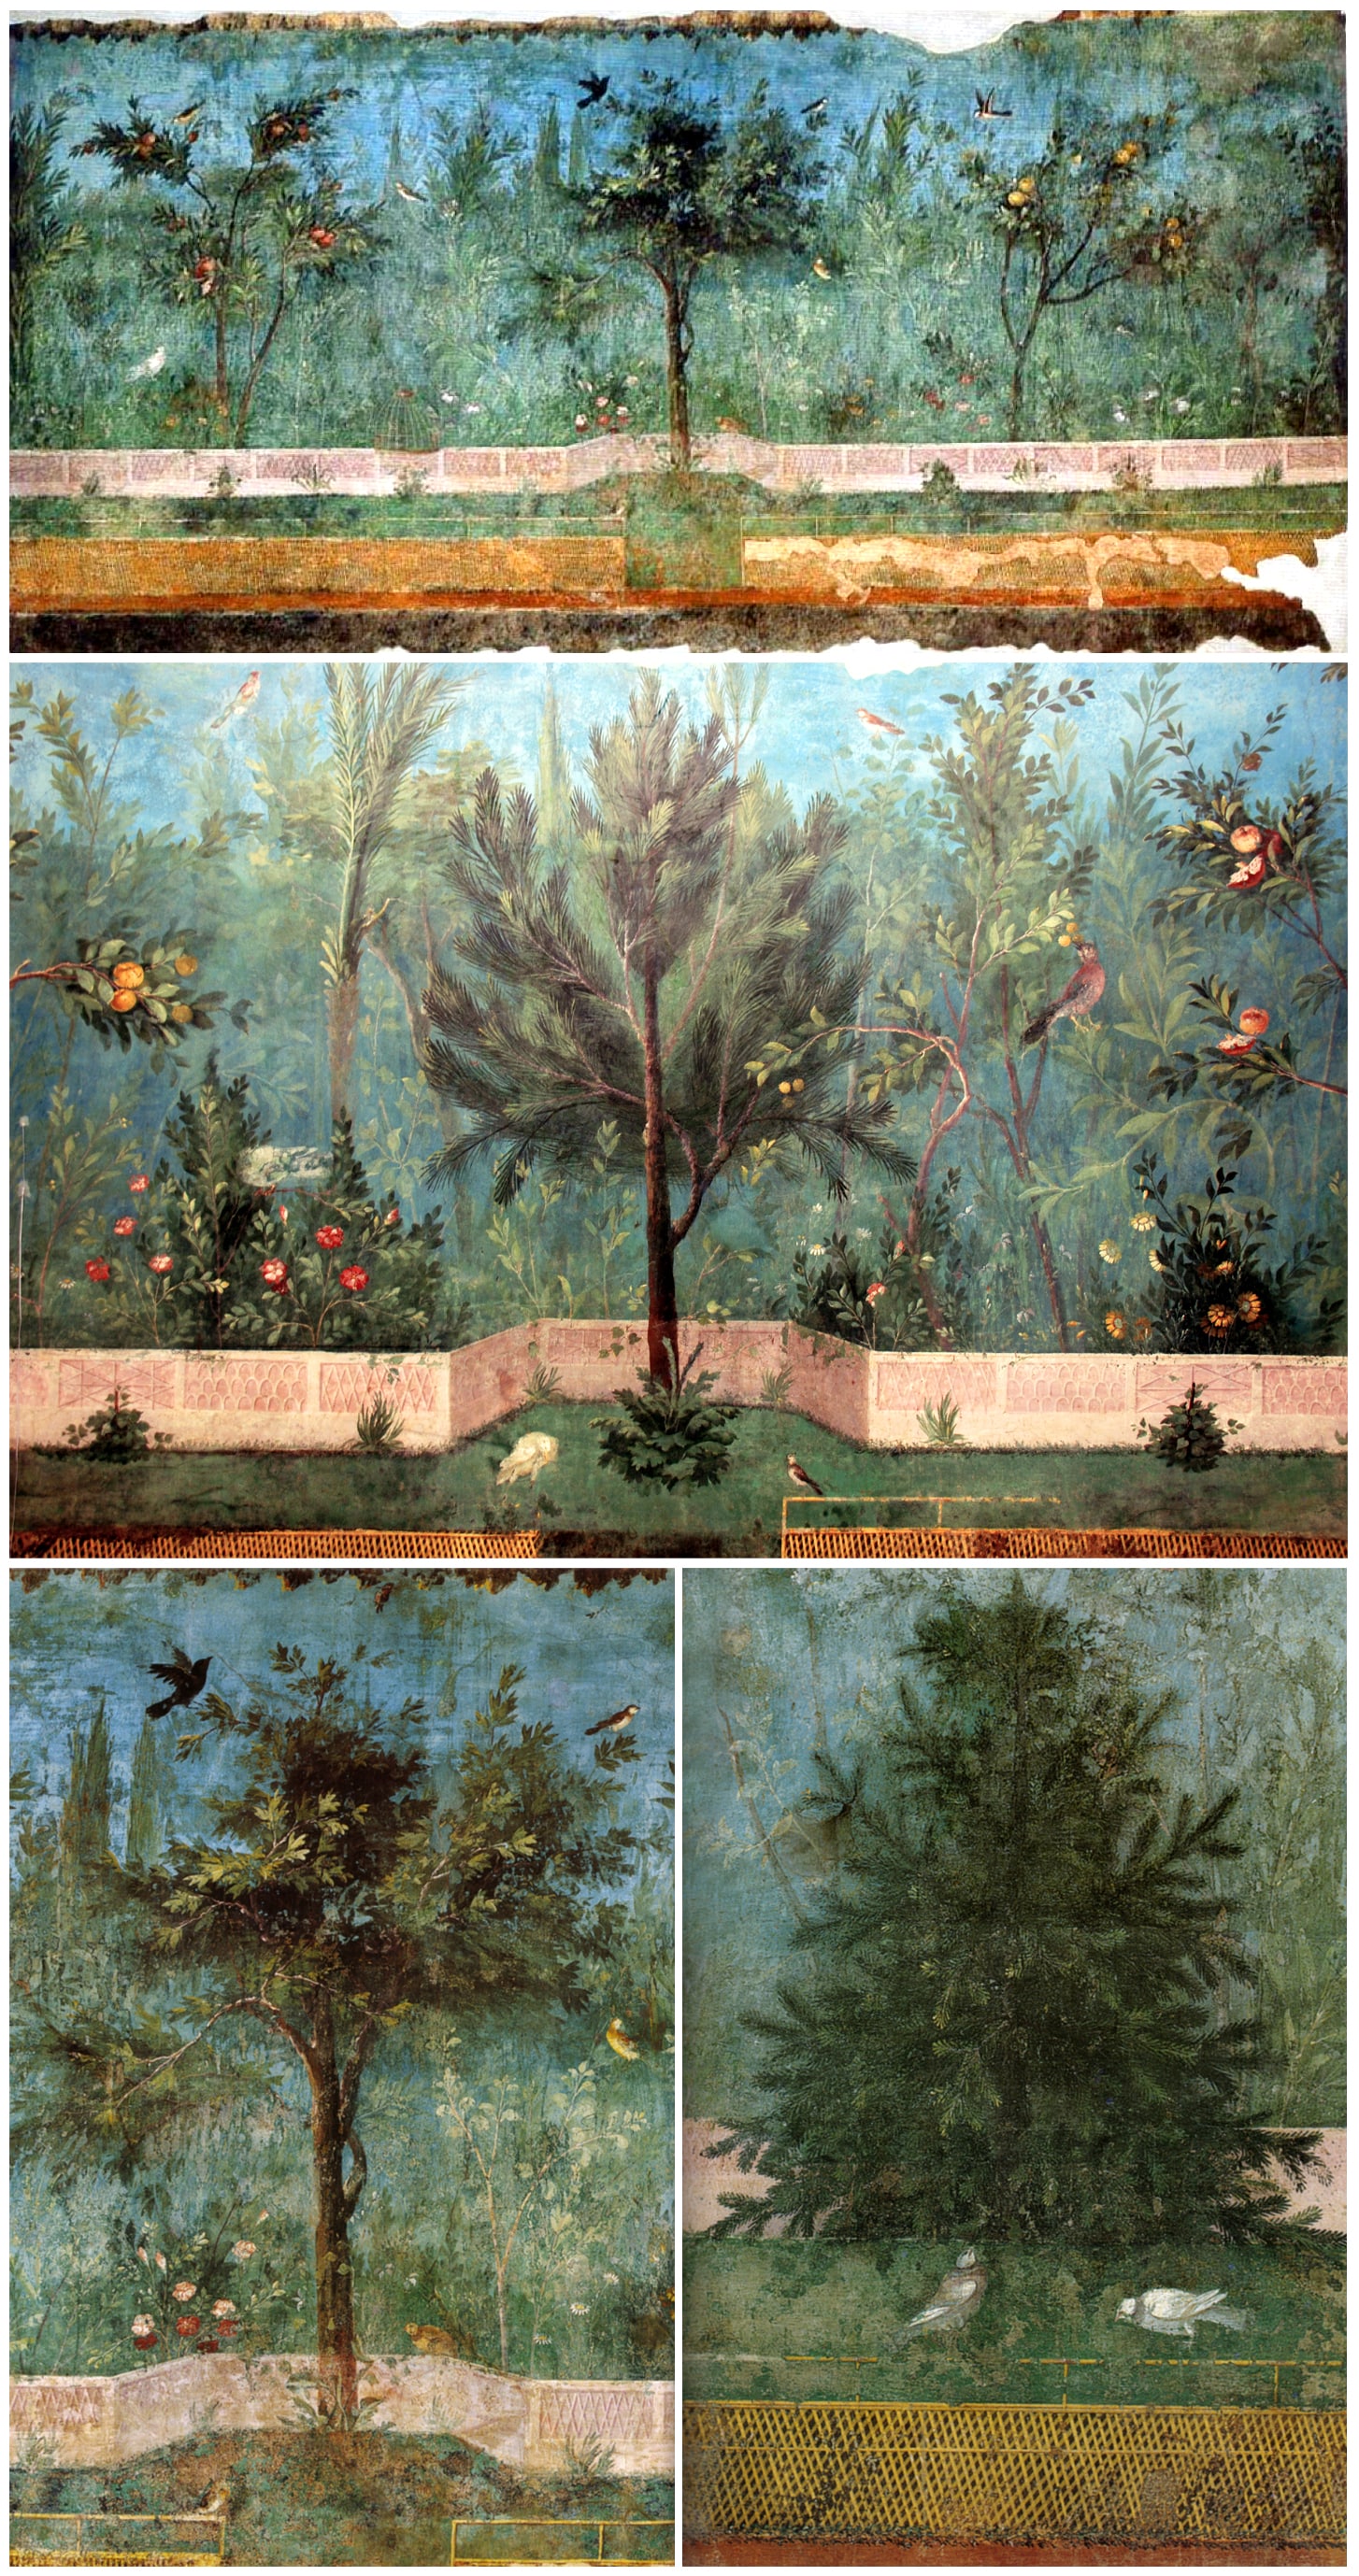 Pittura di giardino della villa di Livia